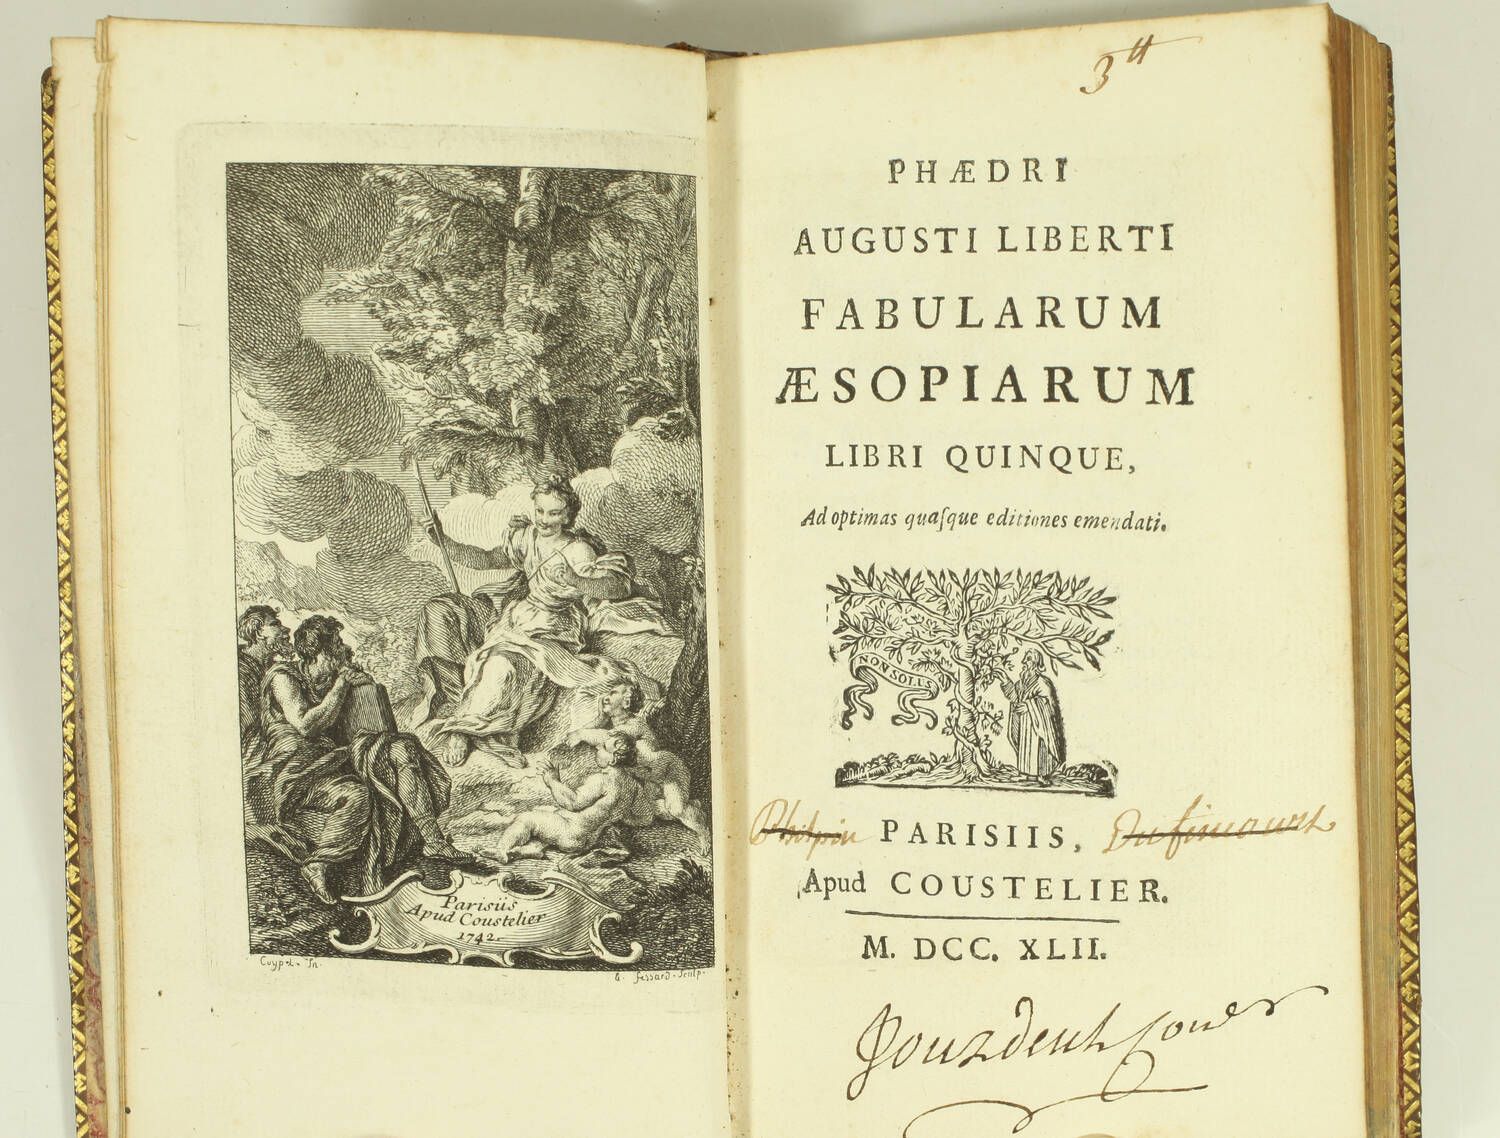 Fables d Esope - Phèdre - Avianus - Coustelier, 1742 - Figures - Photo 0, livre ancien du XVIIIe siècle